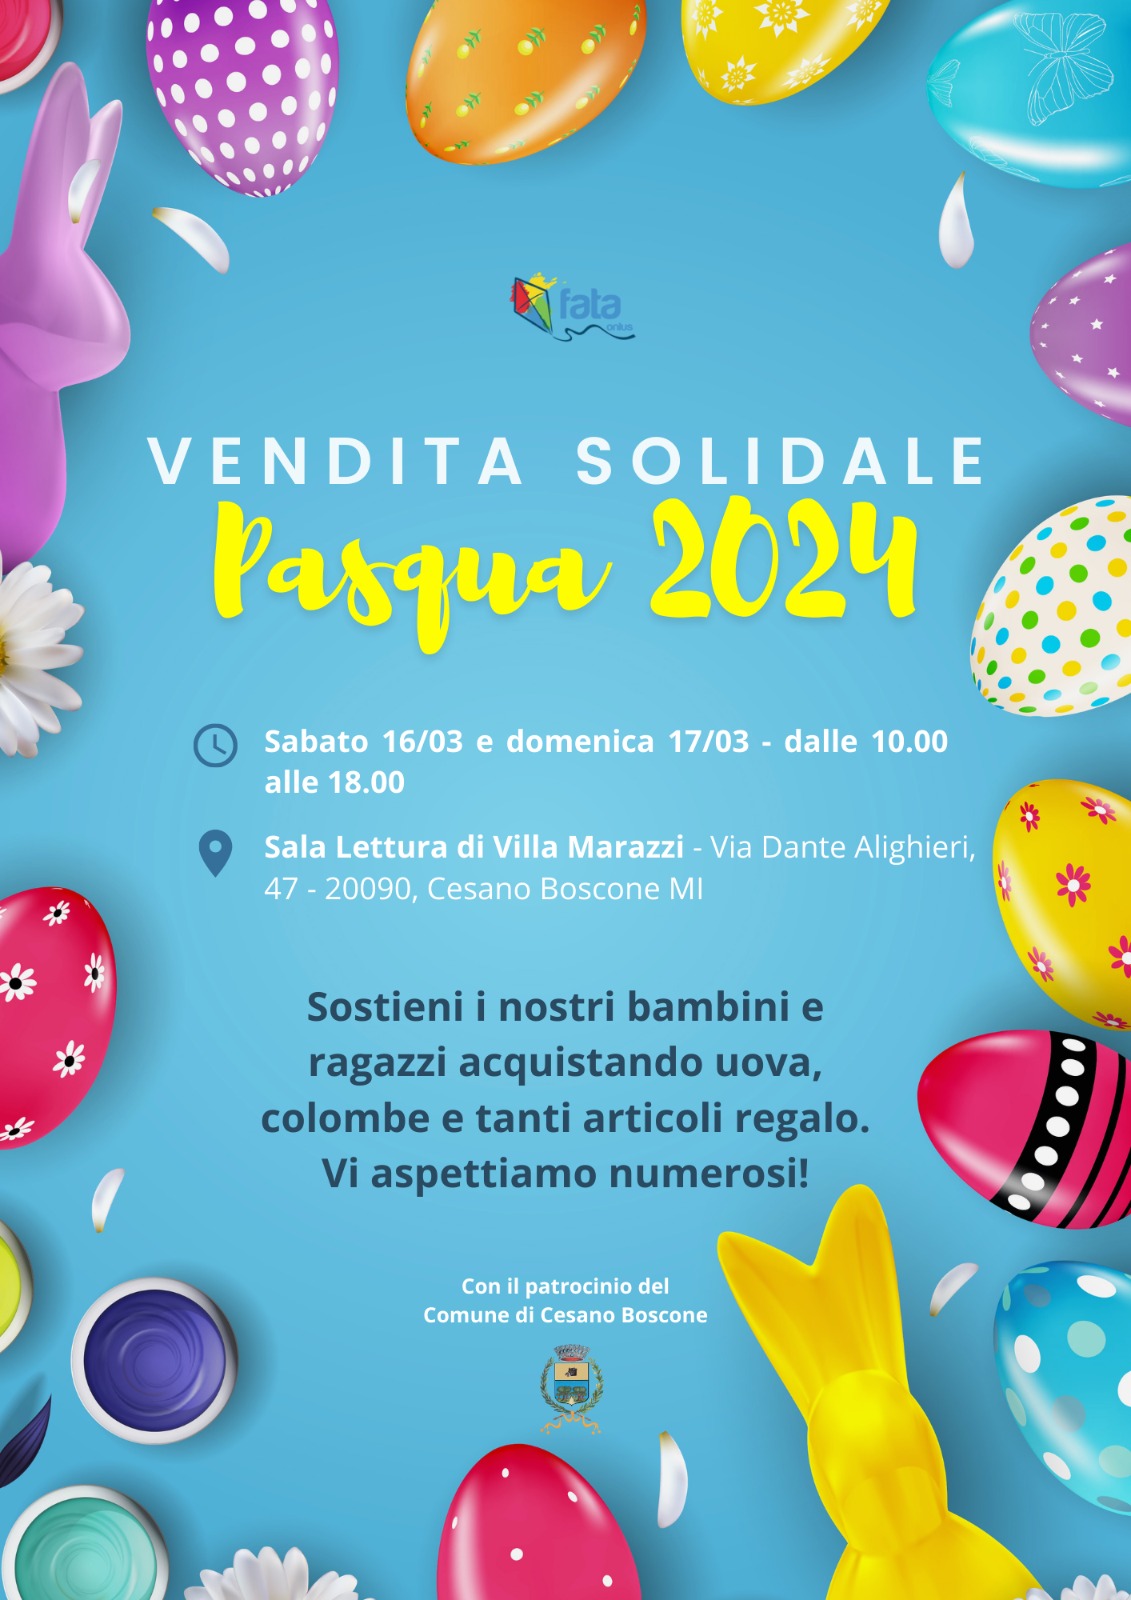 Featured image for “Vendita solidale di Pasqua in Villa Marazzi”